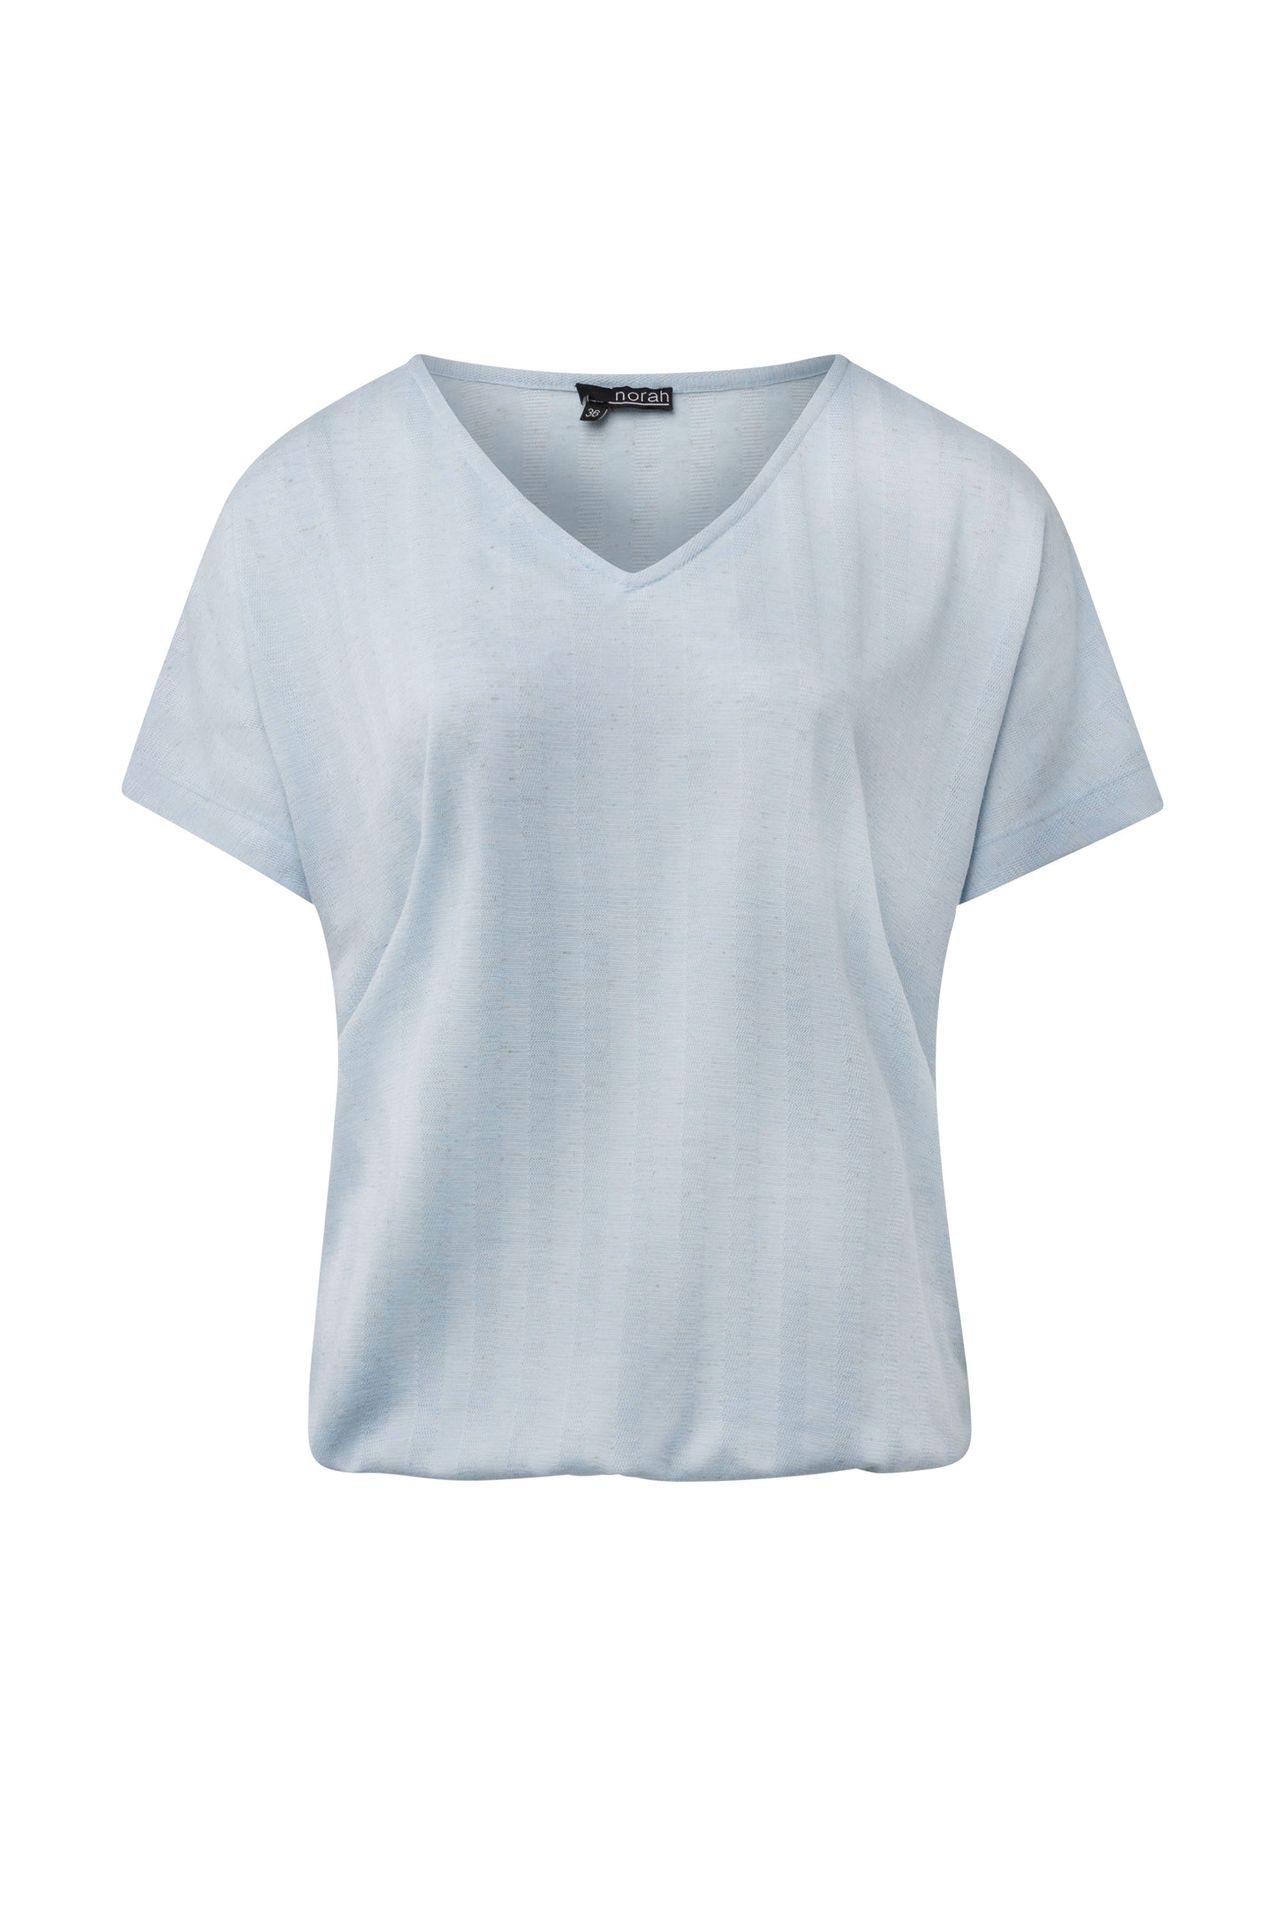 Norah Lichtblauw shirt light blue 214517-401